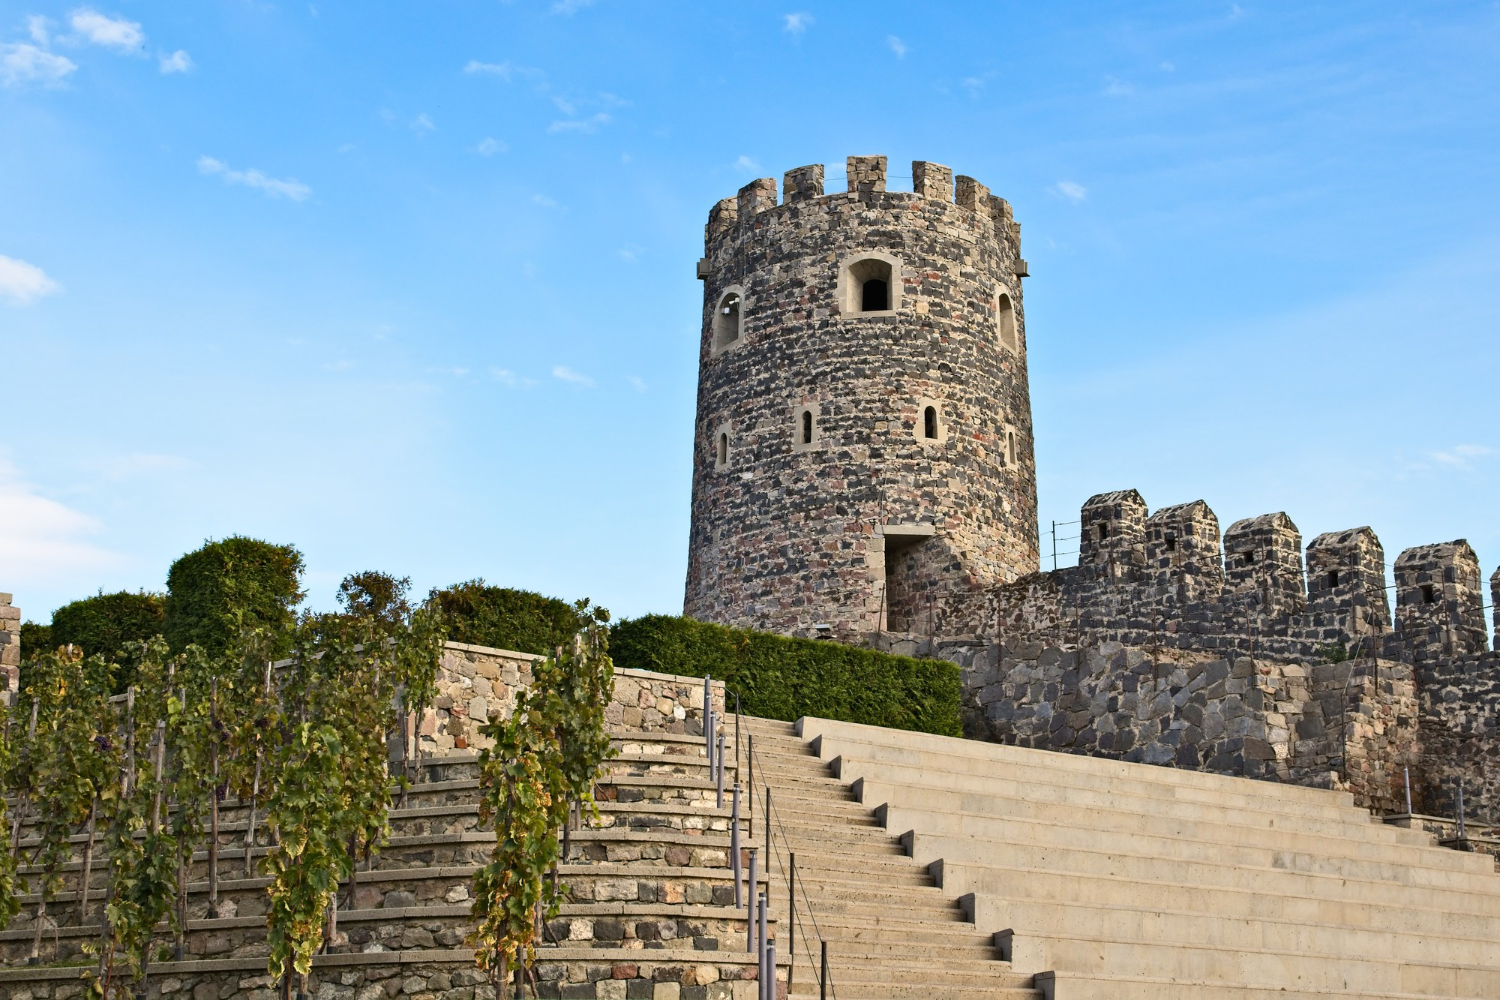 Zamek krzyżacki jako jeden z najczęściej wybieranych szlaków turystycznych